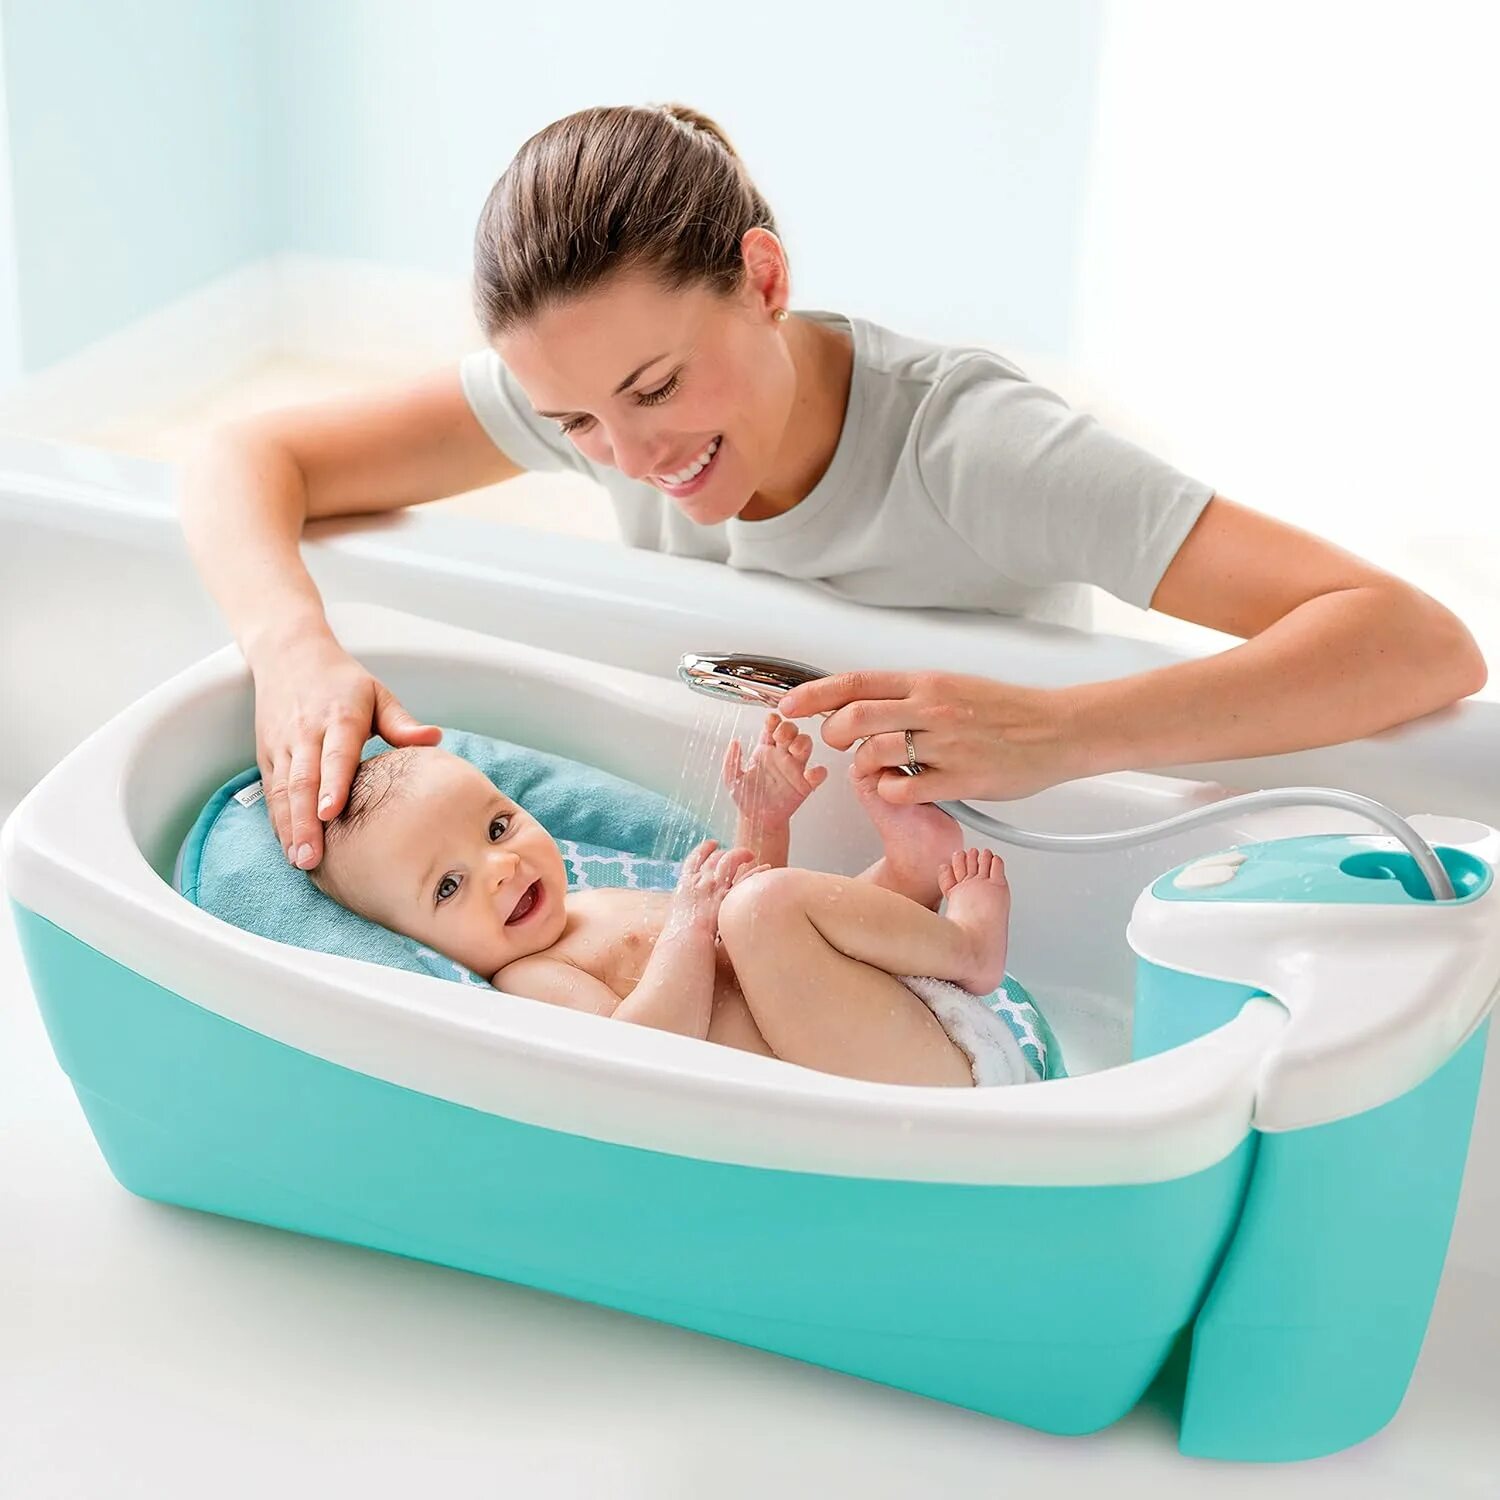 Ванночка Summer Infant Foldaway. Ванночка Summer Infant. Ванная для малыша. Ванночка для купания новорожденных. Мама измеряет температуру воды для купания ребенка